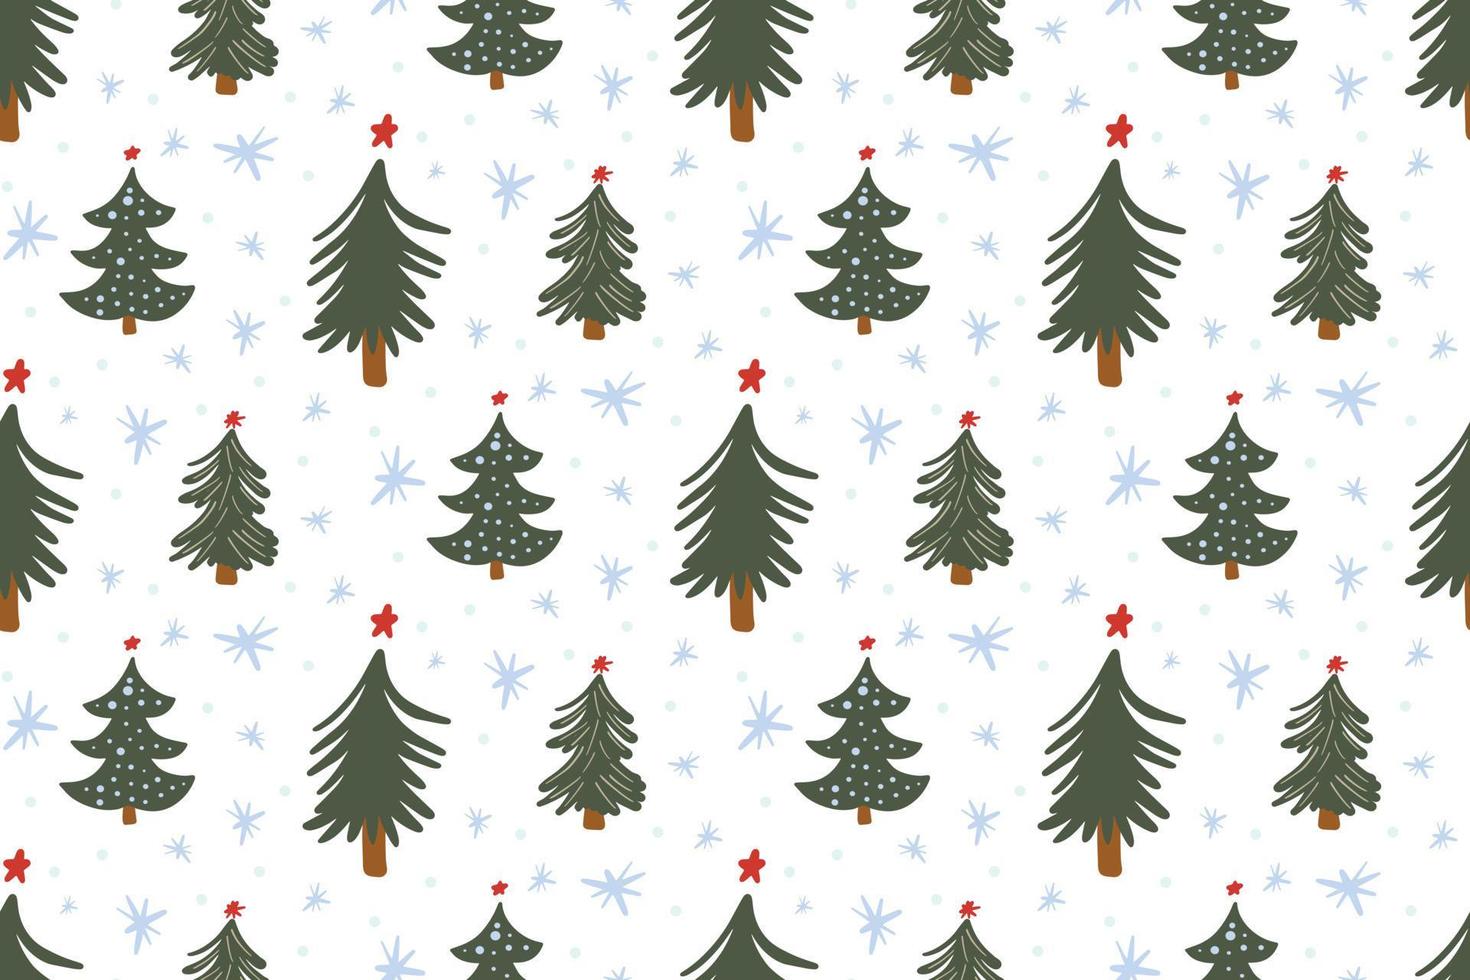 Lindo fondo de invierno sin patrón con árbol de Navidad garabatos simples y copos de nieve en estilo infantil dibujado a mano. textura de fondo festivo de vacaciones de año nuevo estacional, impresión vector